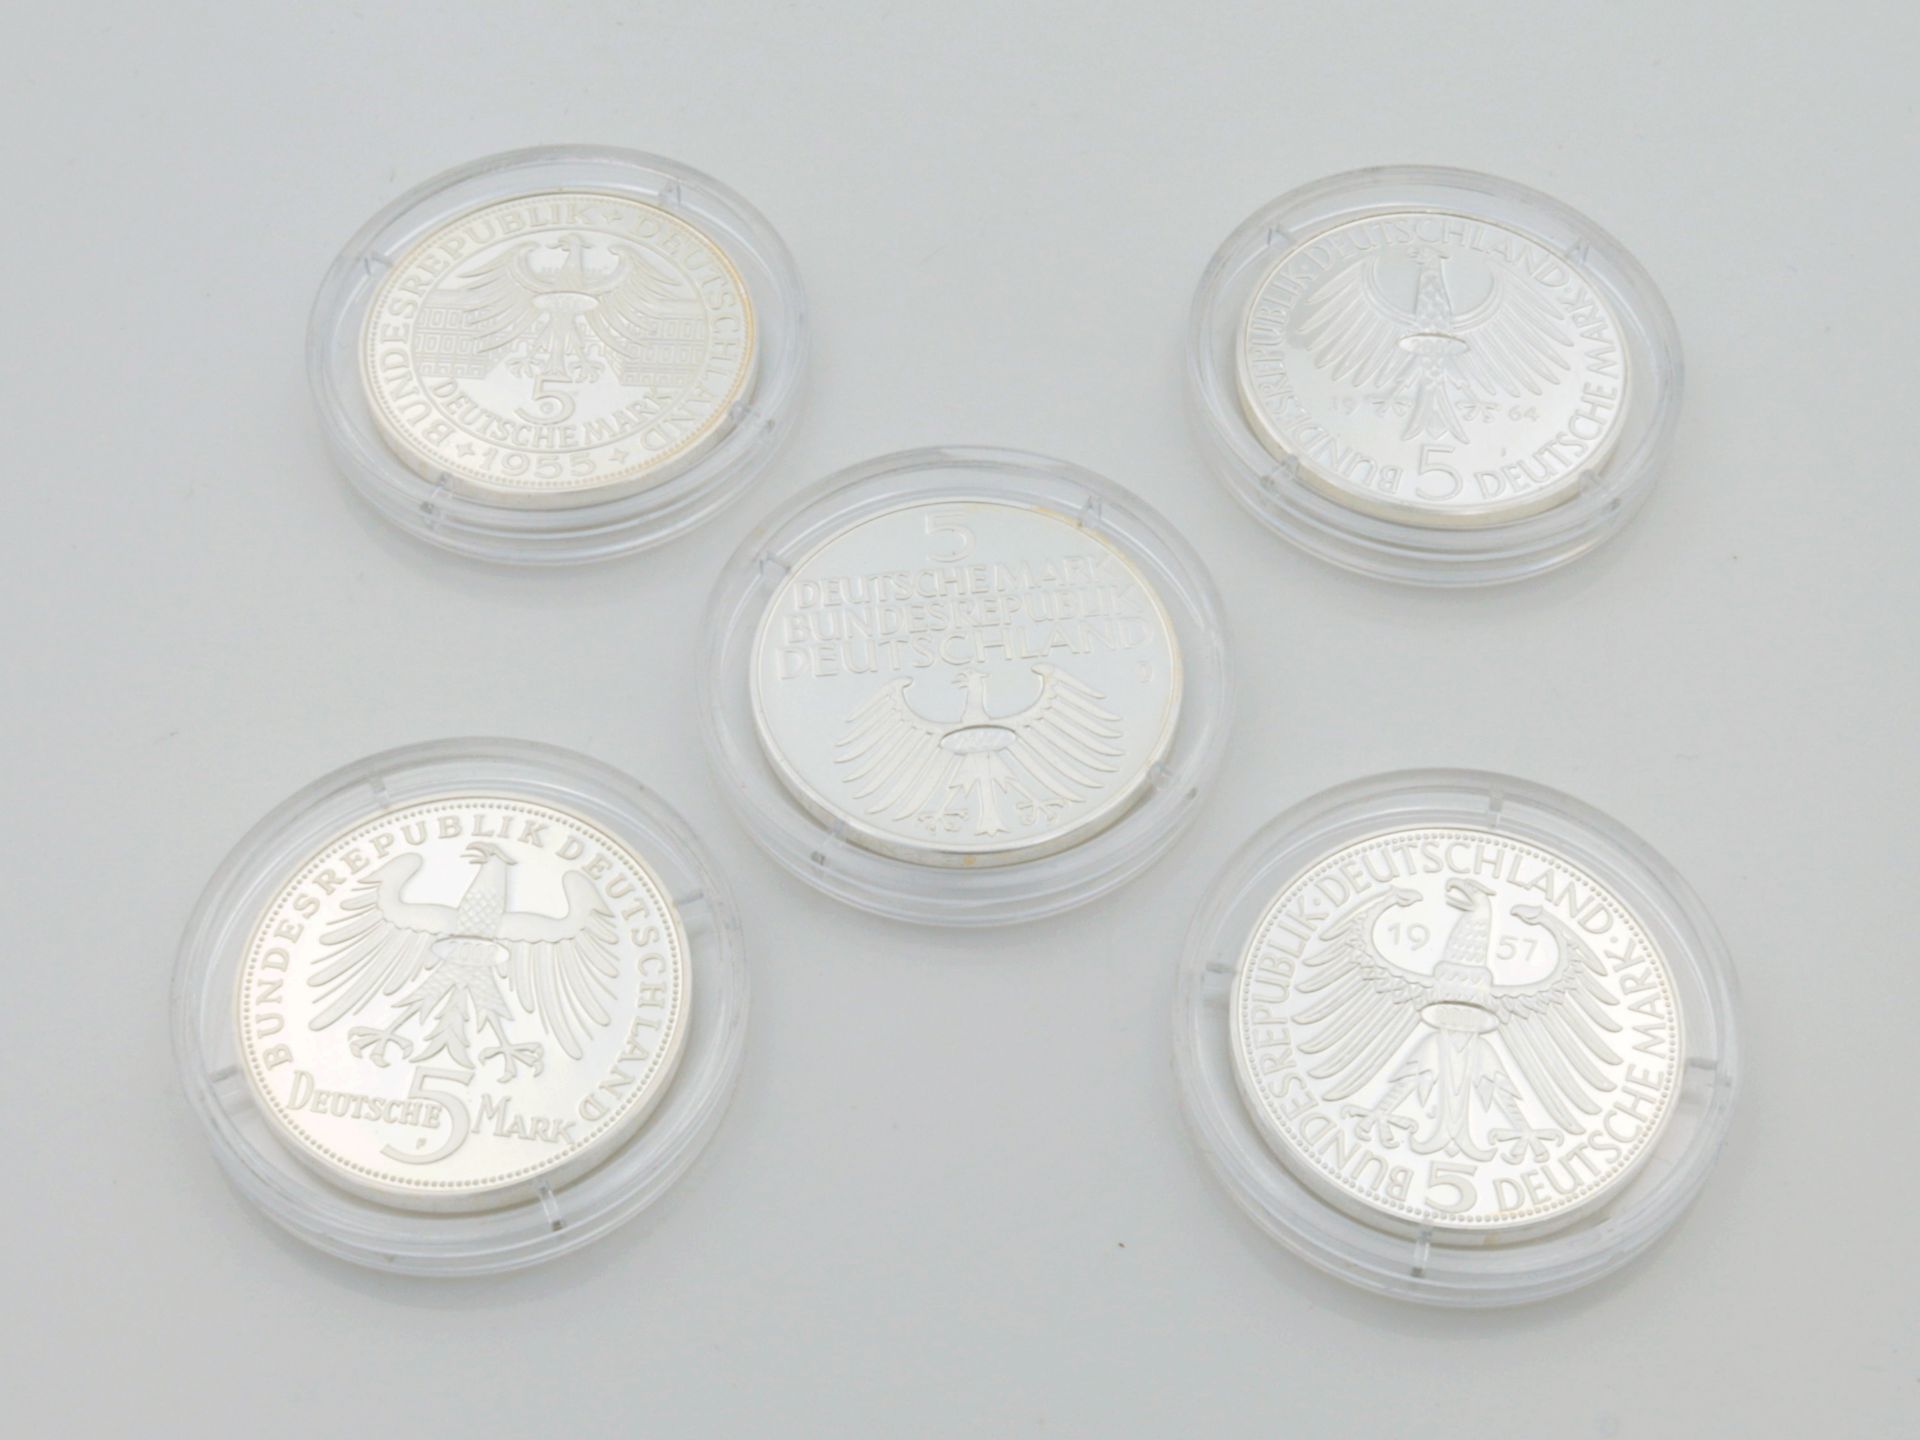 Deutsche Mark 5 Silbermünzen, Nachprägungen 2002, 1x Germanisches Museum, Eigenthum der dt. Nation, - Bild 2 aus 2